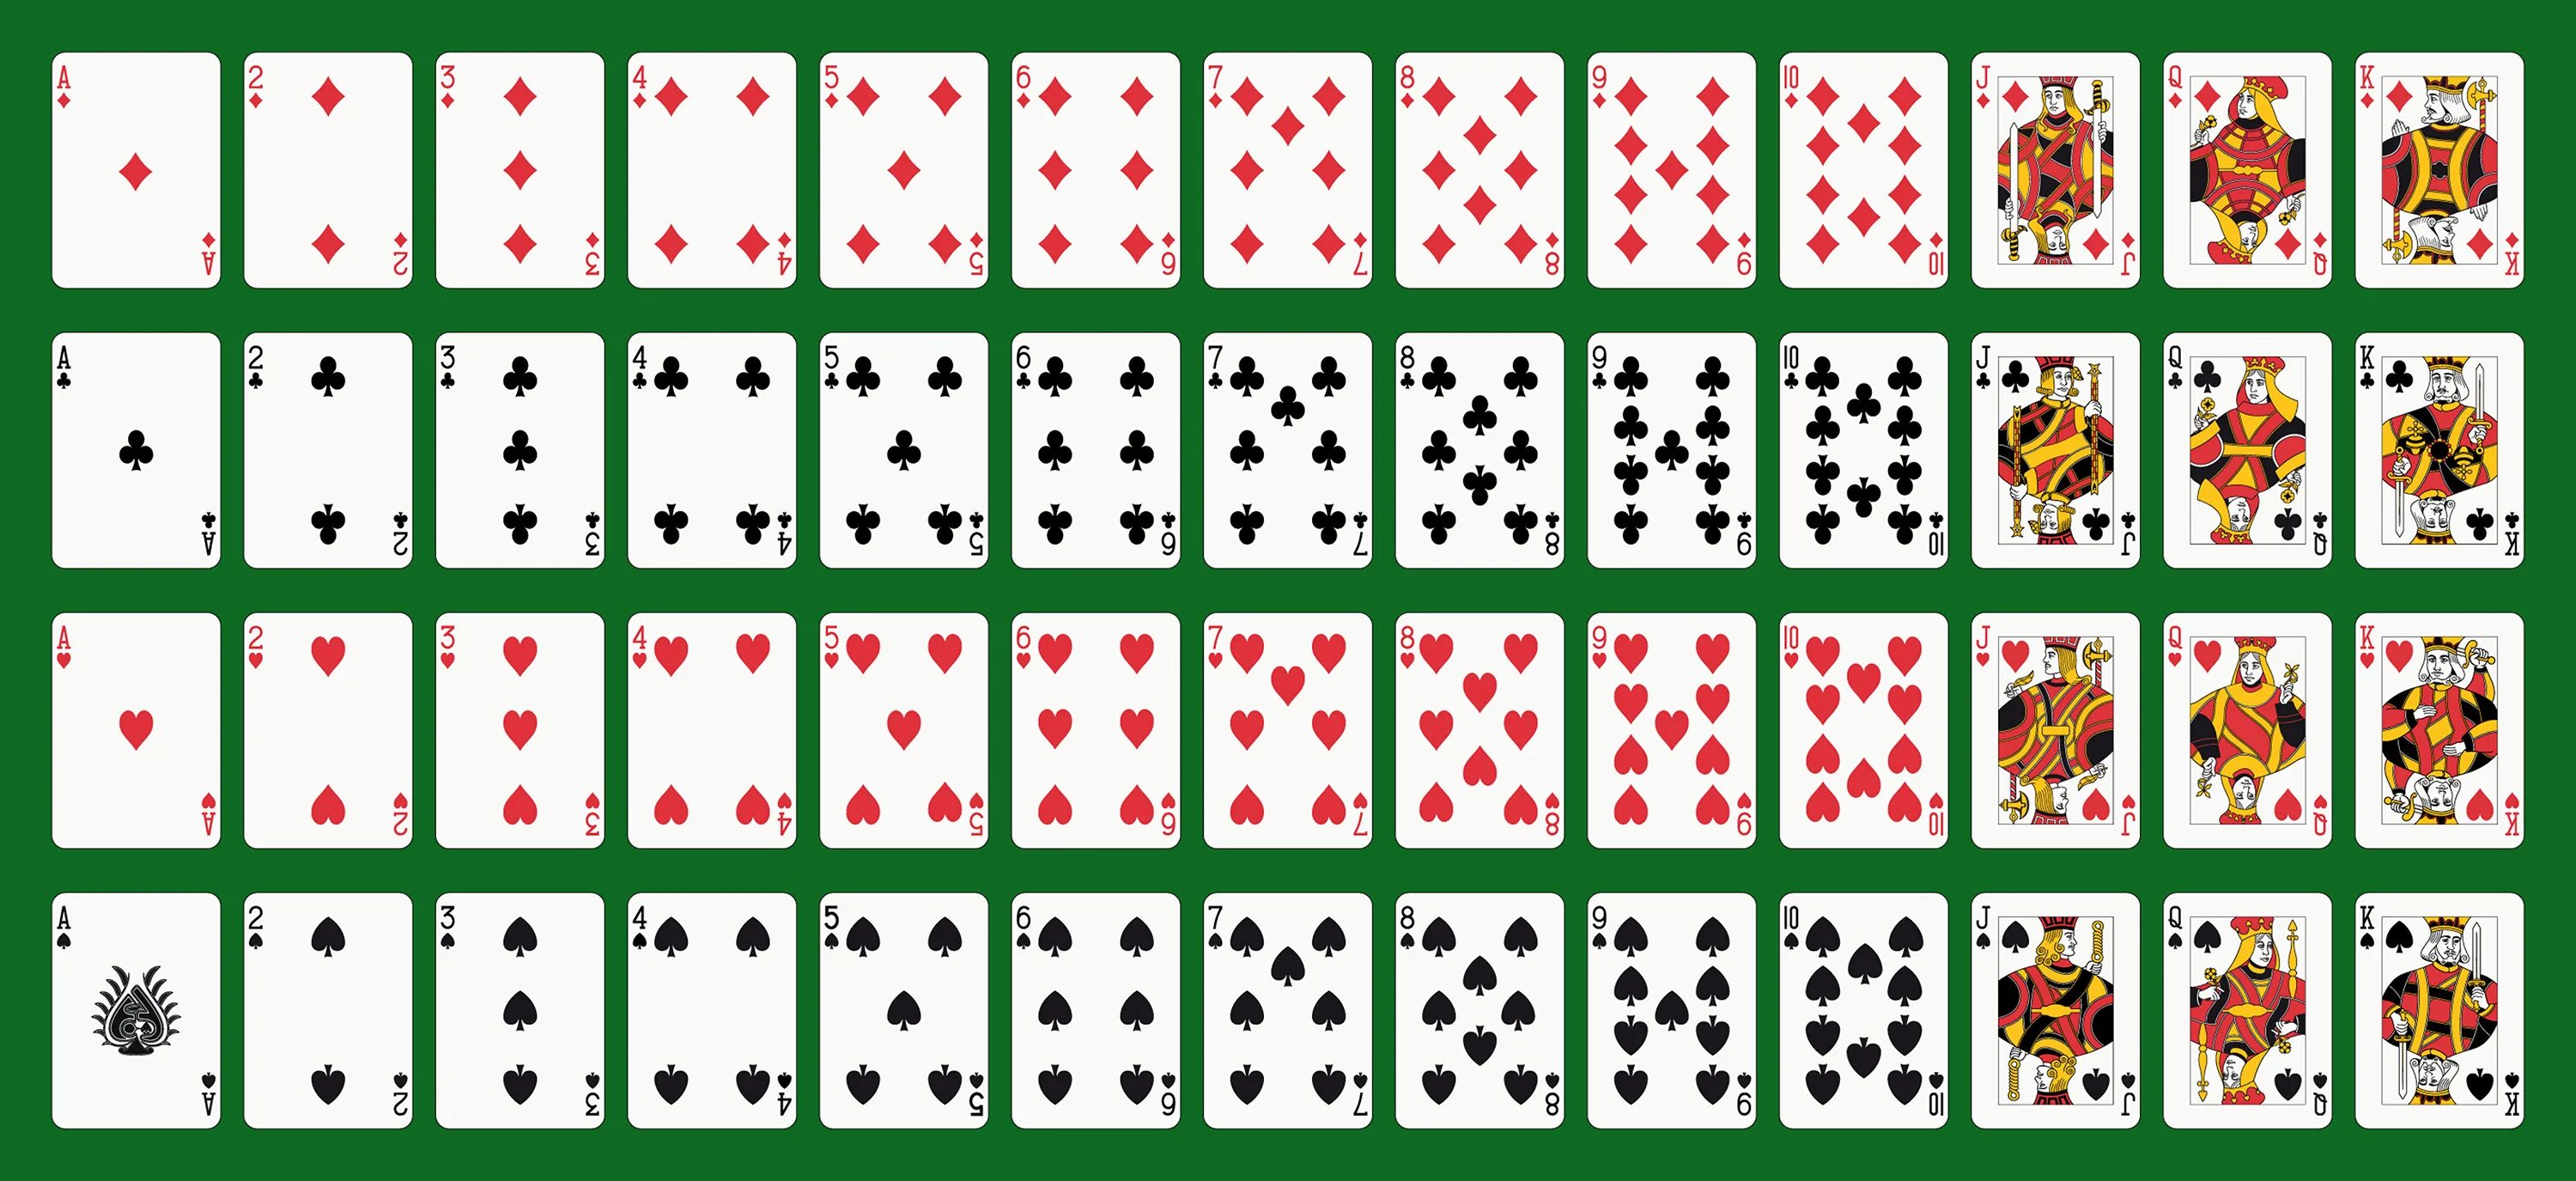 Покер колода 52 карты. Колода в 52 карты в холдеме. Standard 52-Card Deck. Распечатка карт игральных.